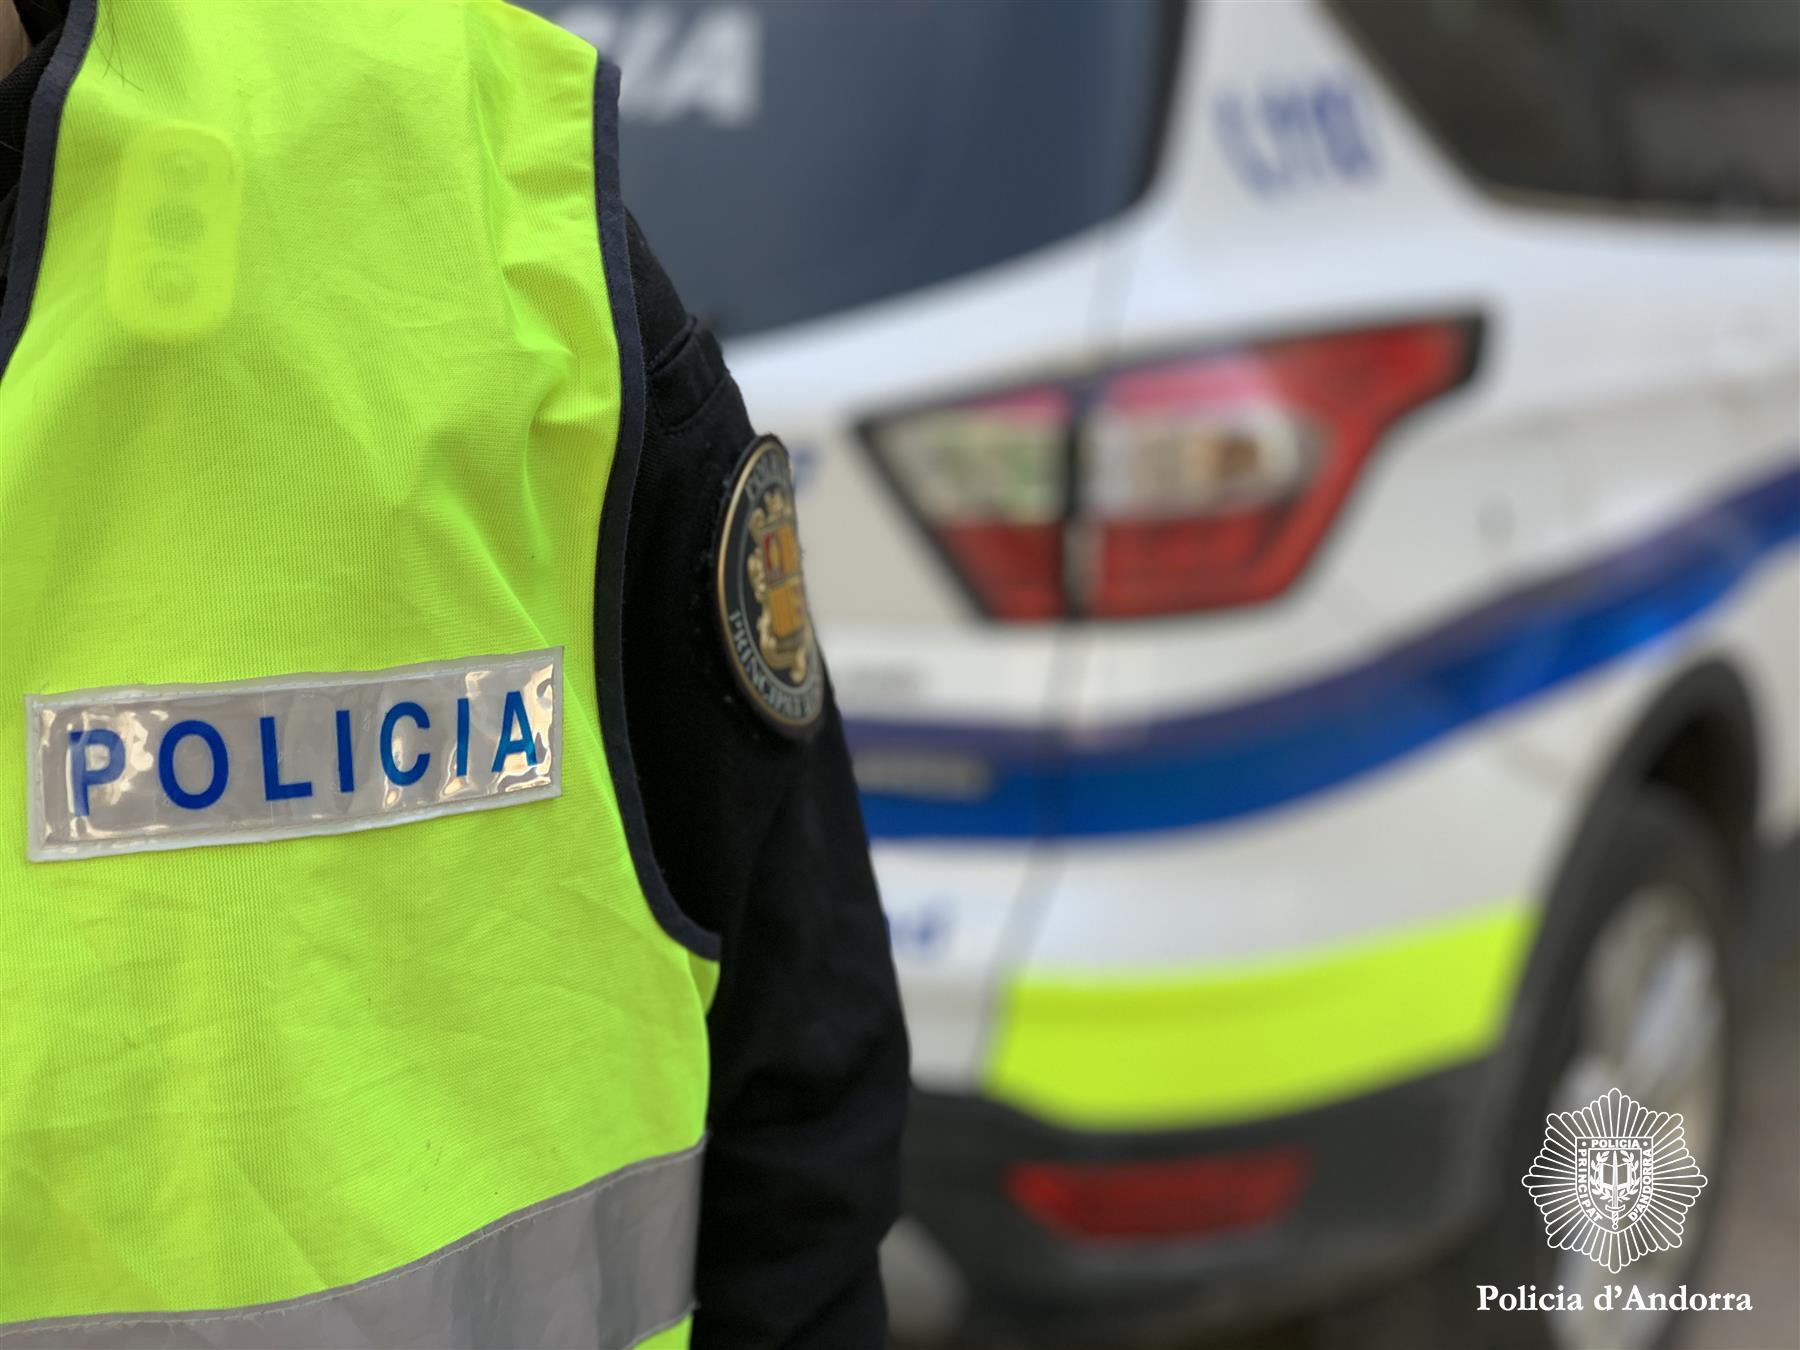 Un detingut com a presumpte autor d’un delicte contra la llibertat sexual i un arrestat amb antecedents arreu d'Europa per furts